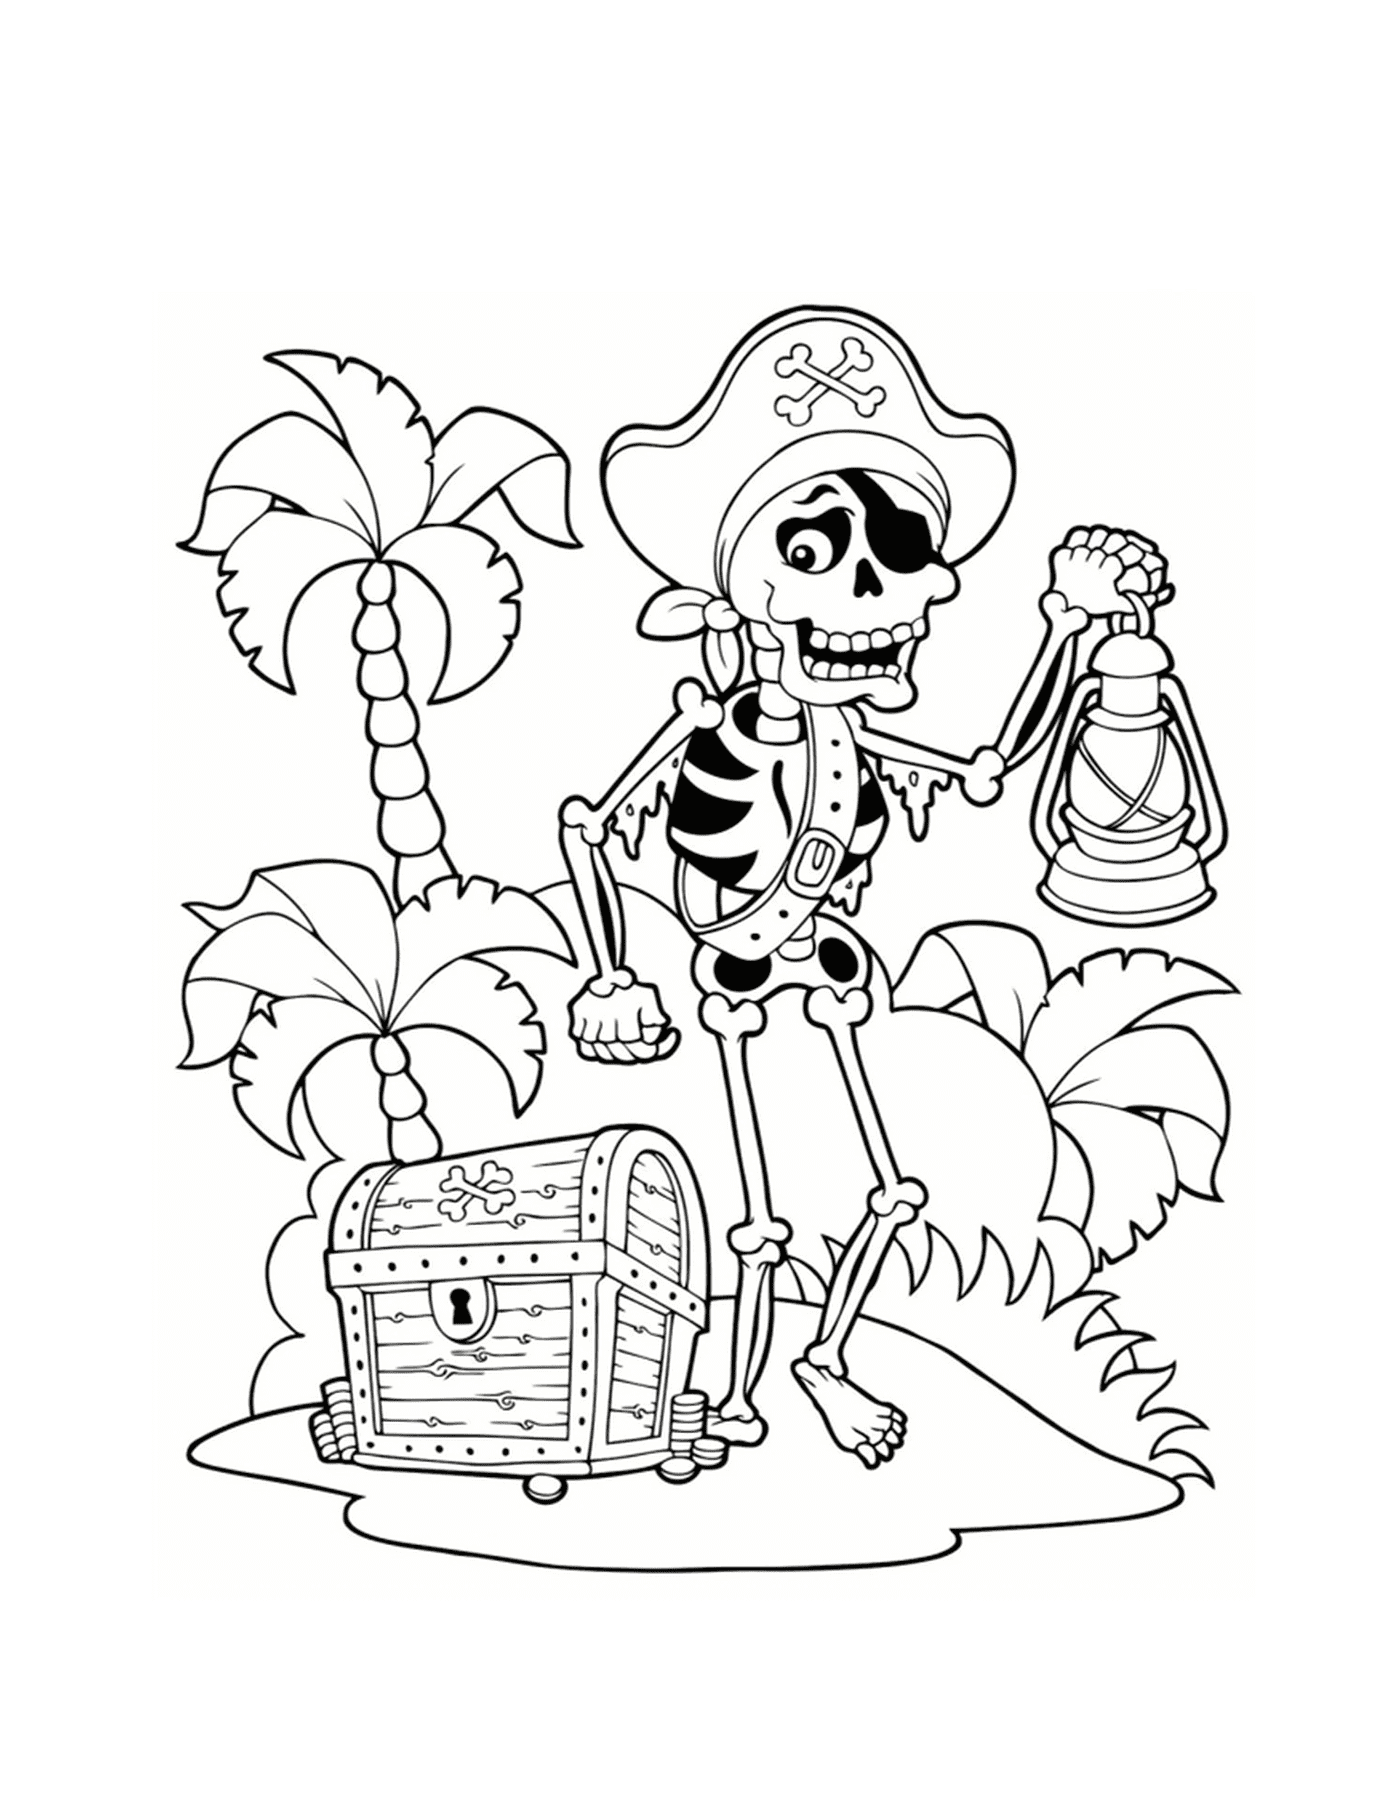  Пиратский скелет, сокровище на острове 